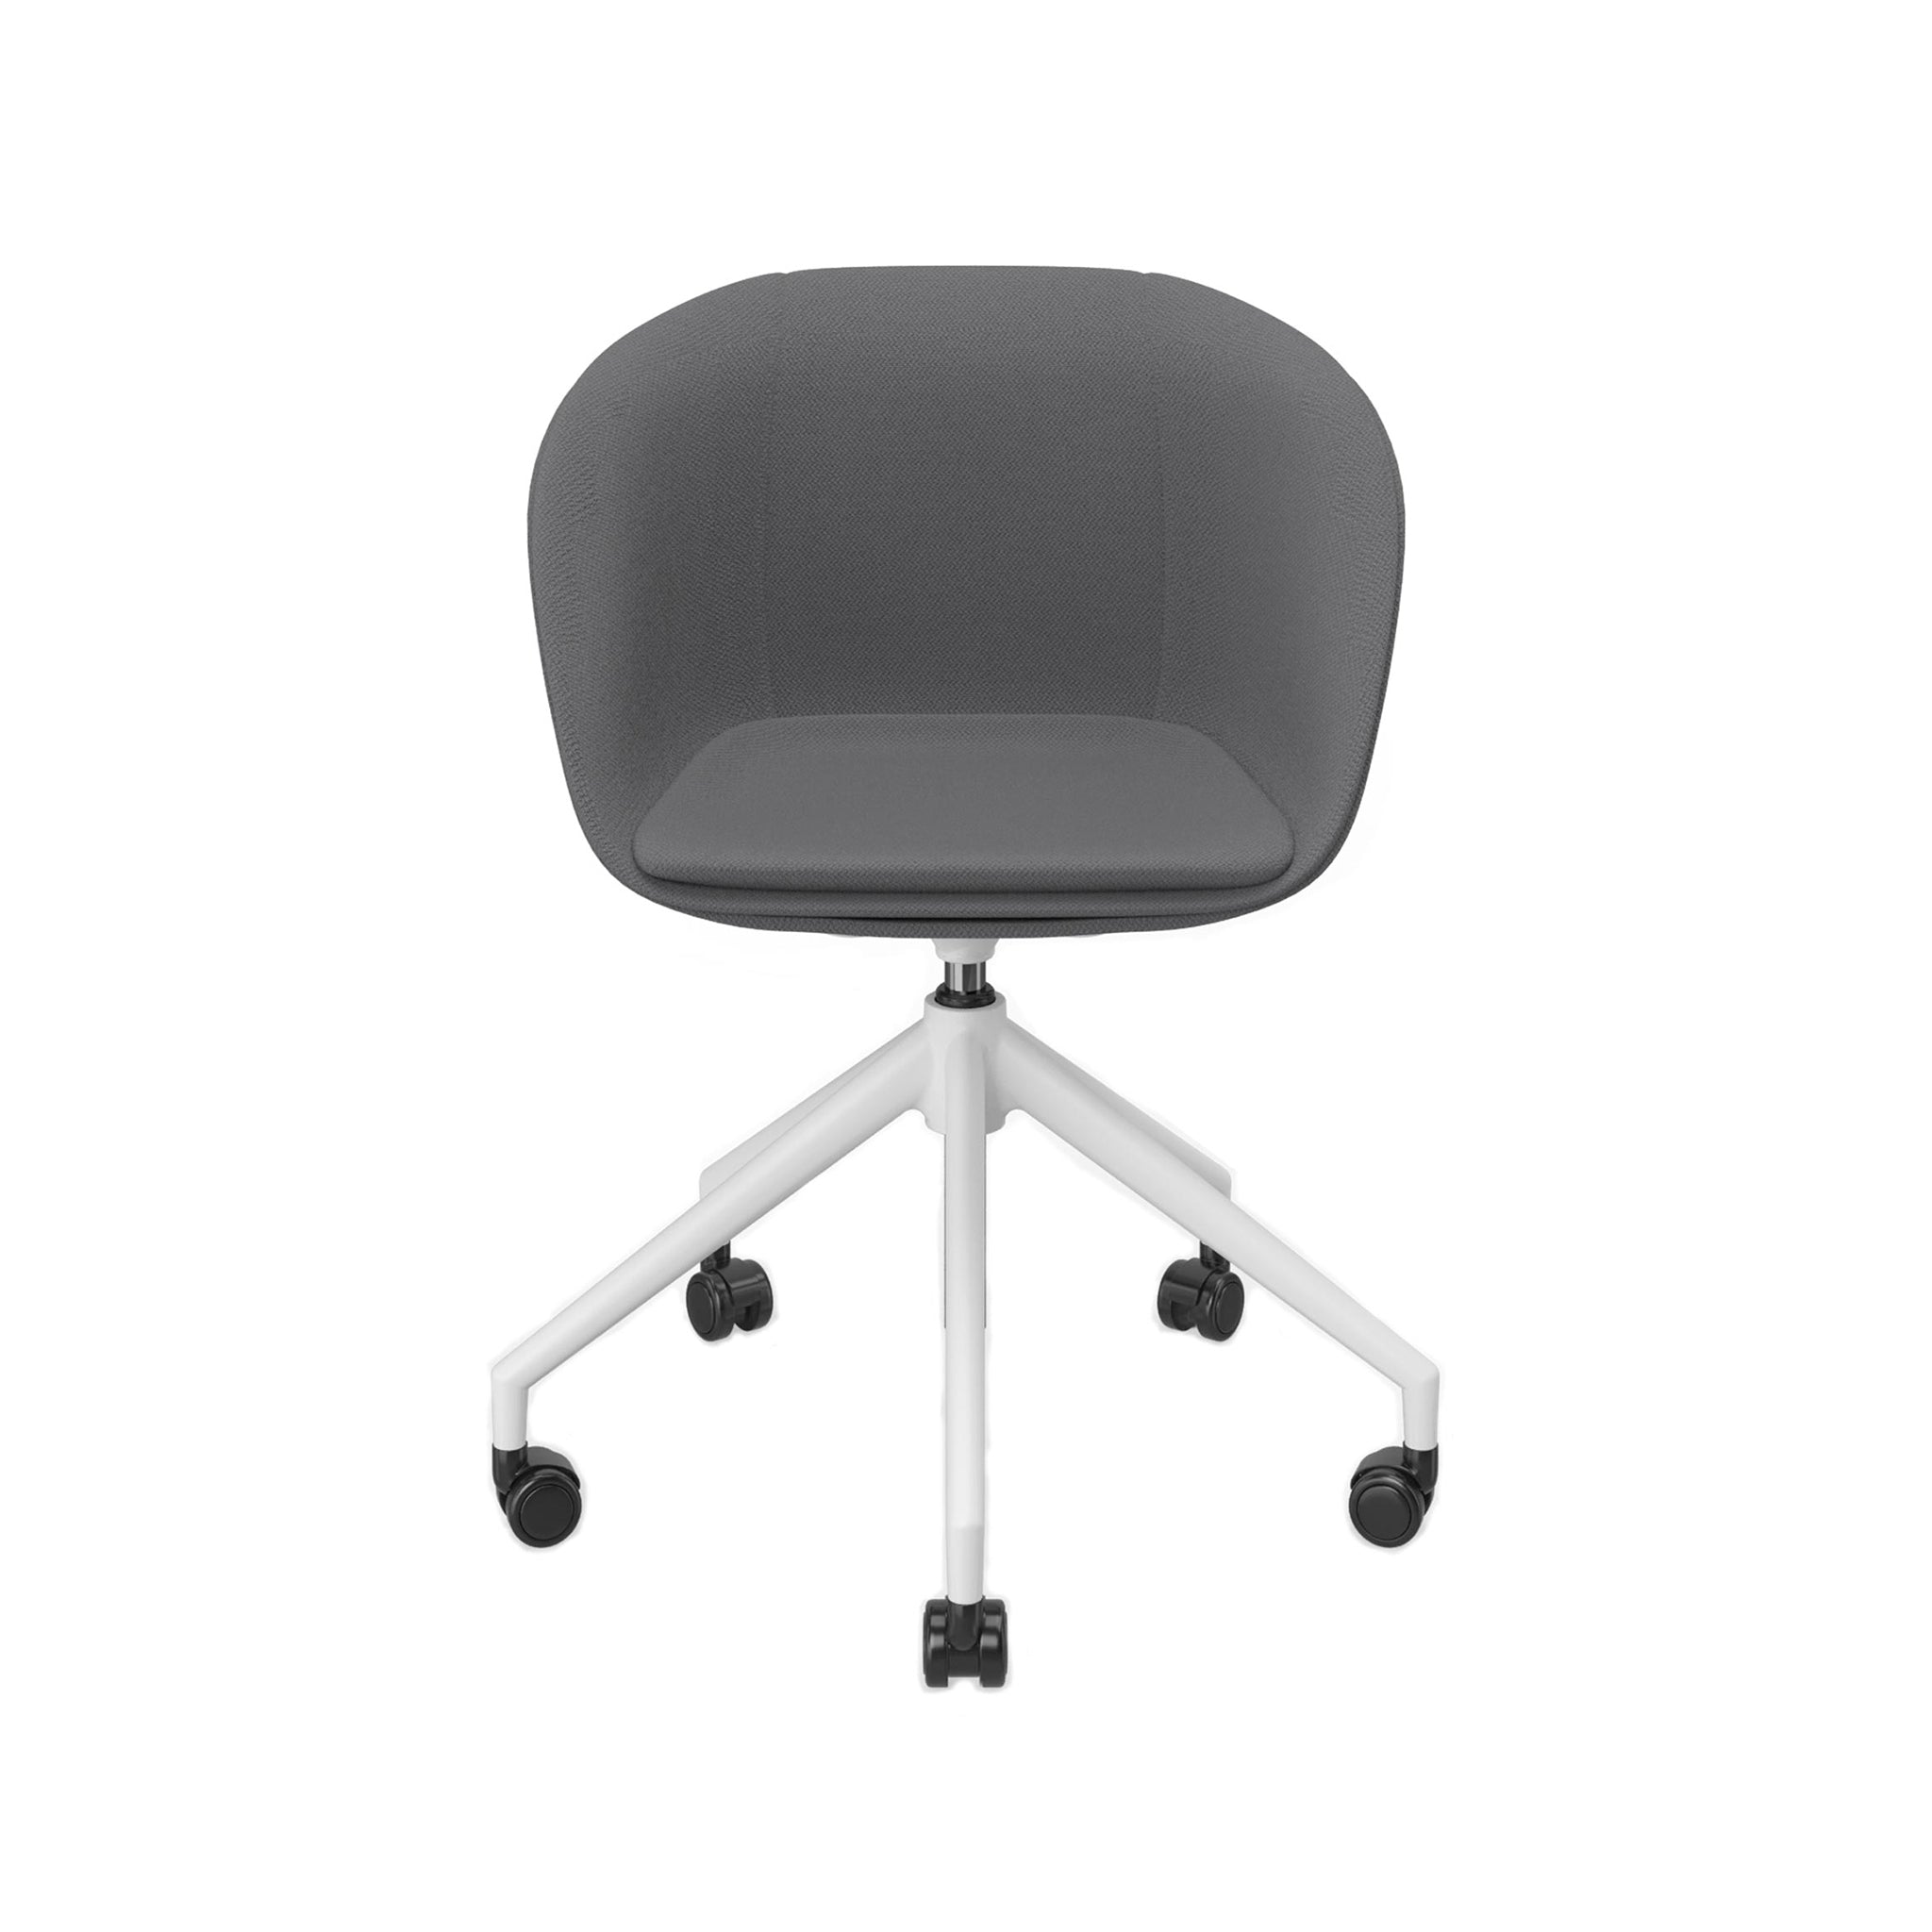 Vor weißem Hintergrund sieht man von vorne einen Schalenstuhl mit ergonomisch geformter vollumpolsterter Sitzschale. Der Stuhl hat ein Fußkreuz in weiß mit Höhenverstellung. Die Rollen sind schwarz.